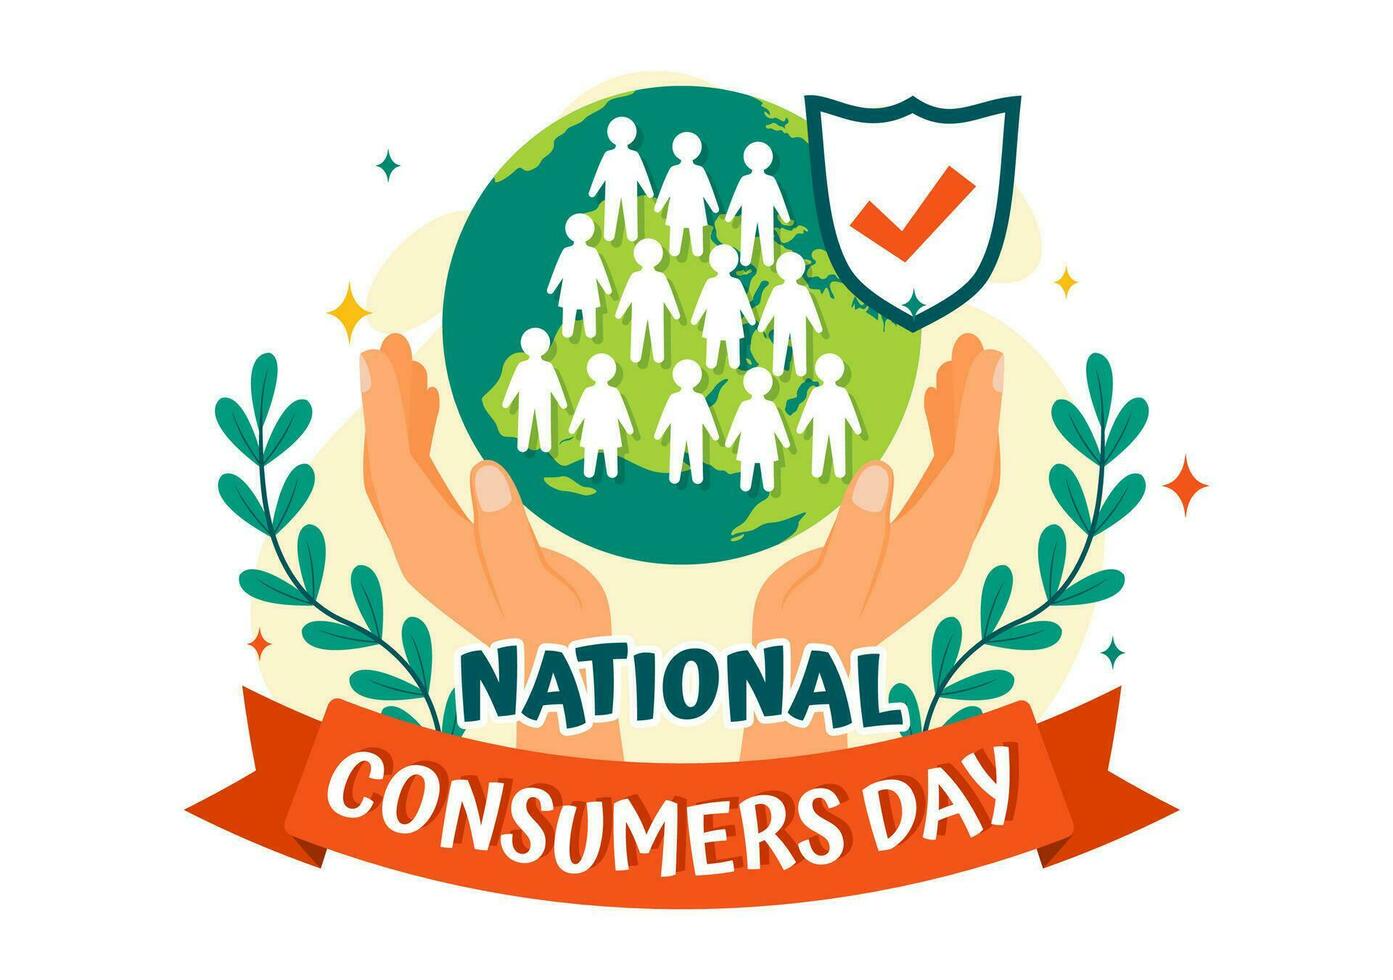 nationell konsument dag vektor illustration med handla vagn och papper väska för befordran, baner eller affisch i platt tecknad serie bakgrund design